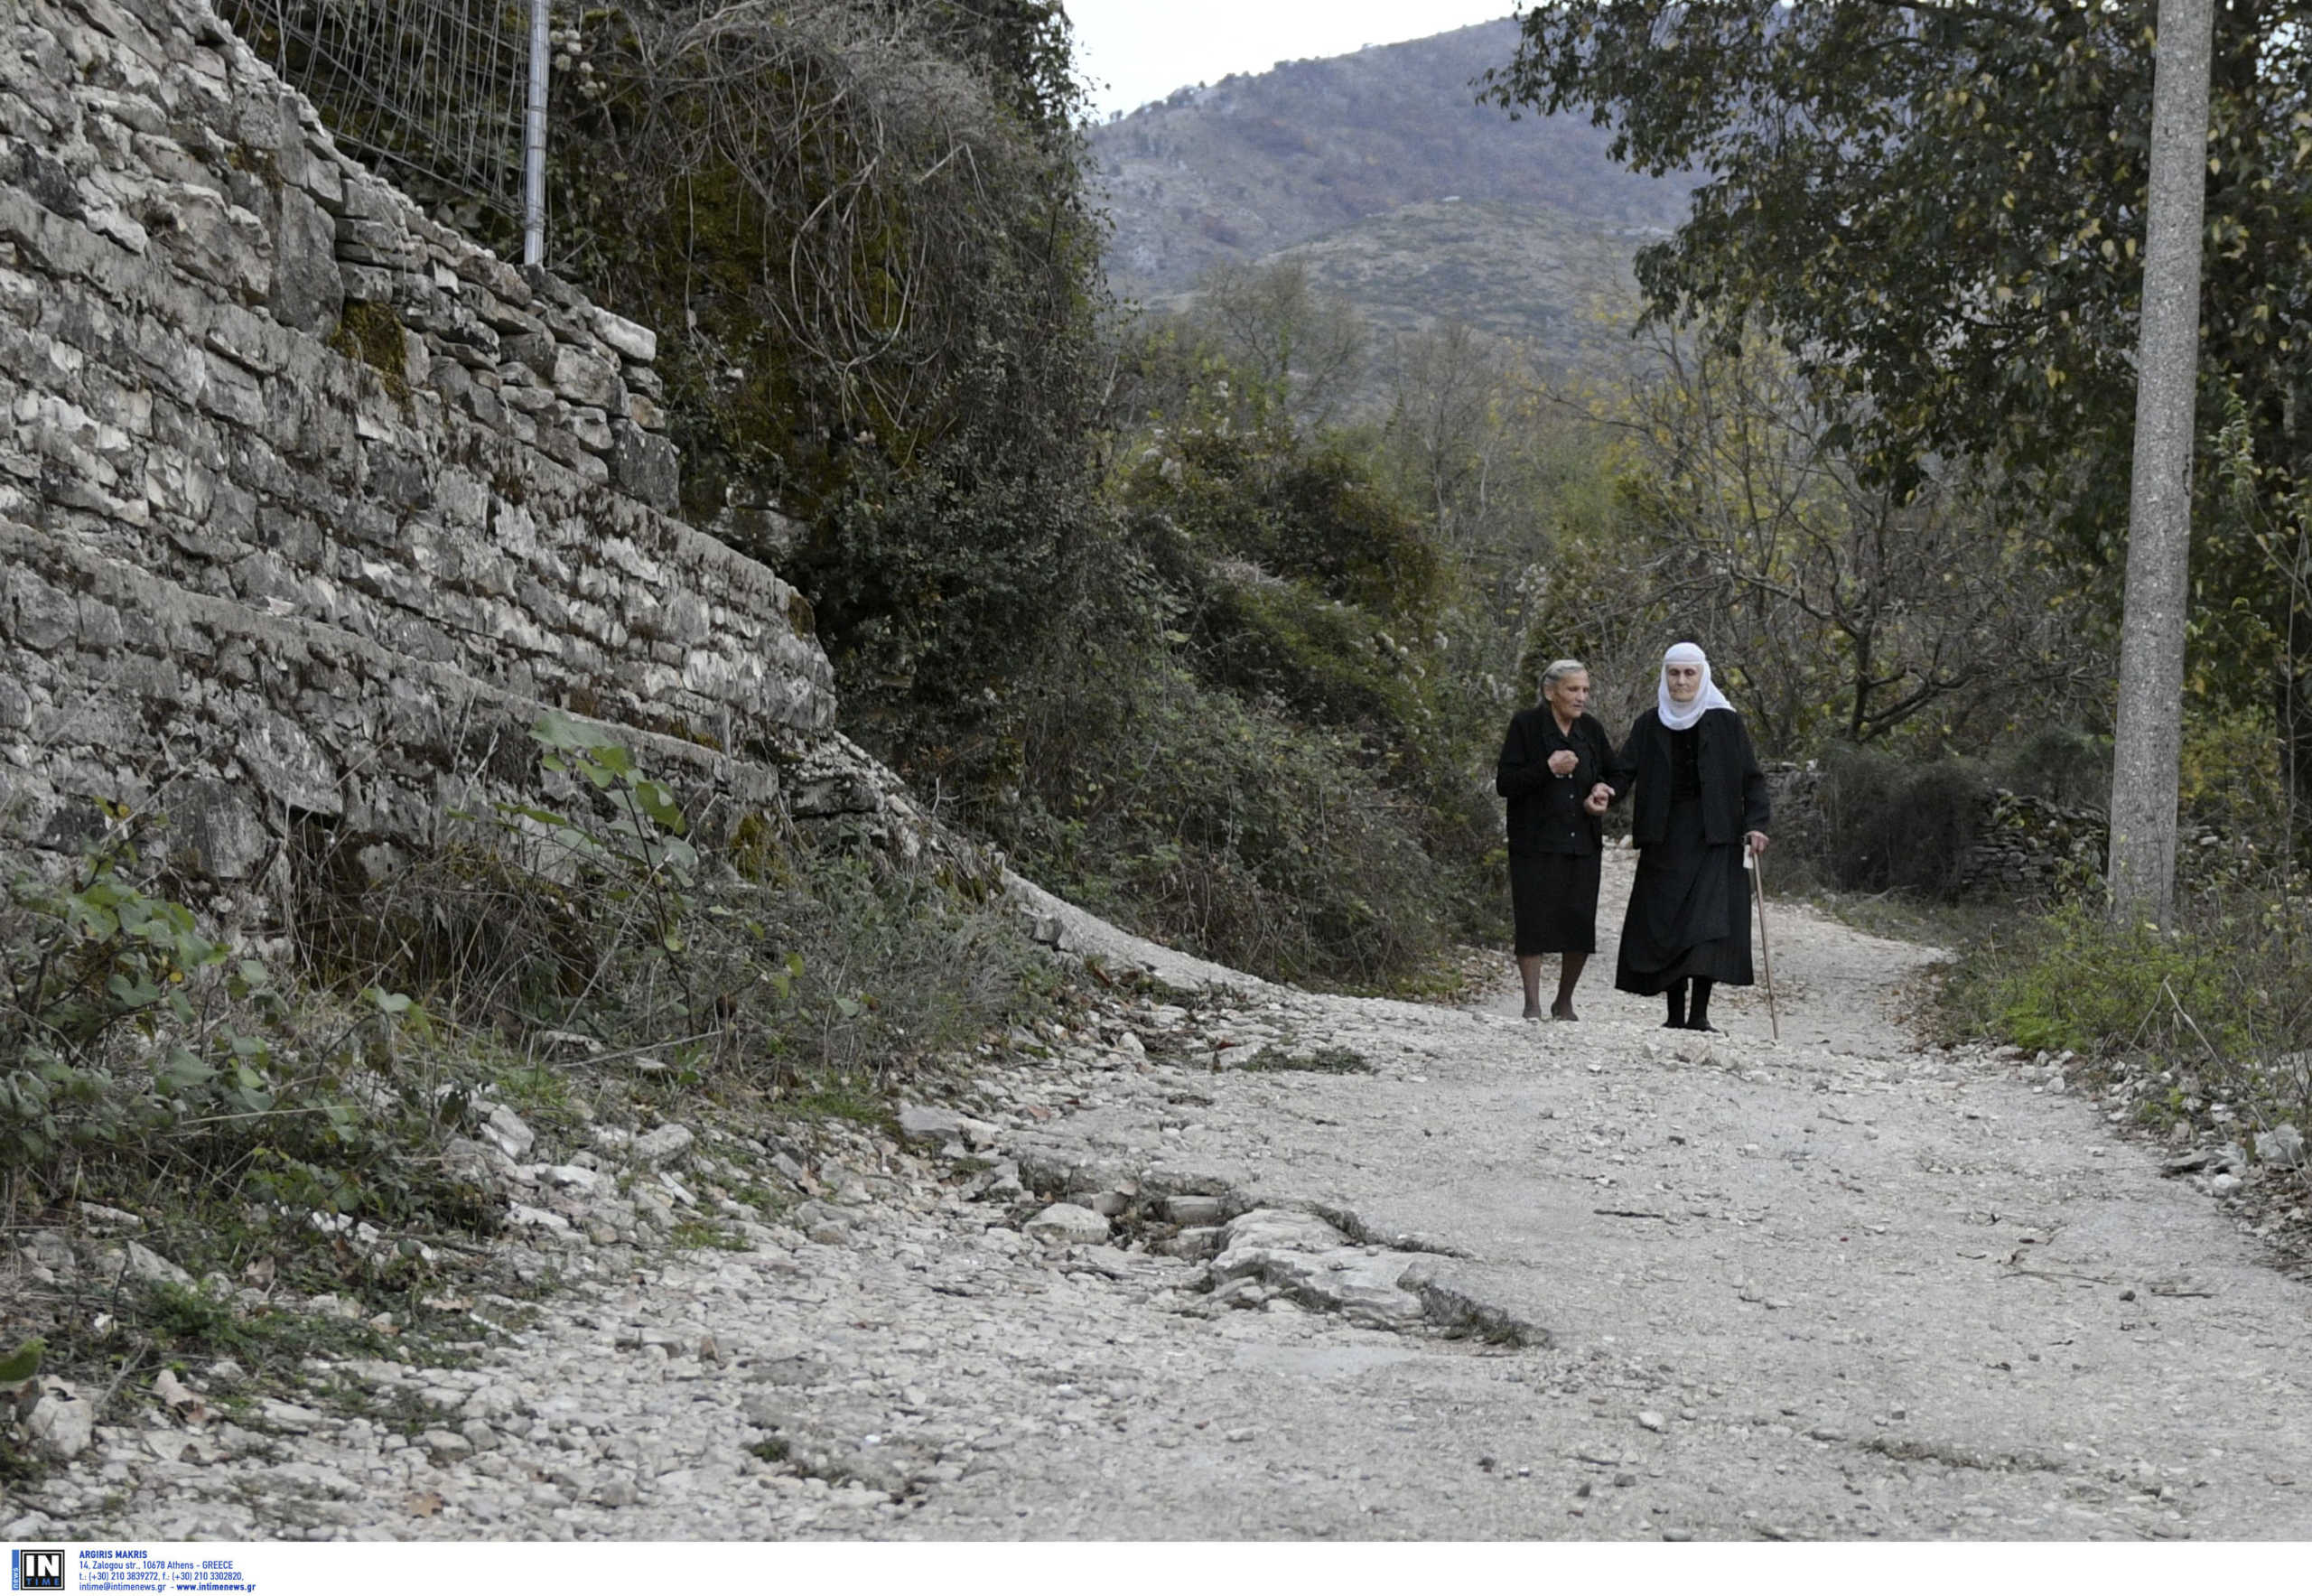 Συνεχείς κλοπές σπιτιών σε ομογενειακά χωριά στην Αλβανία – Ανάστατοι οι κάτοικοι